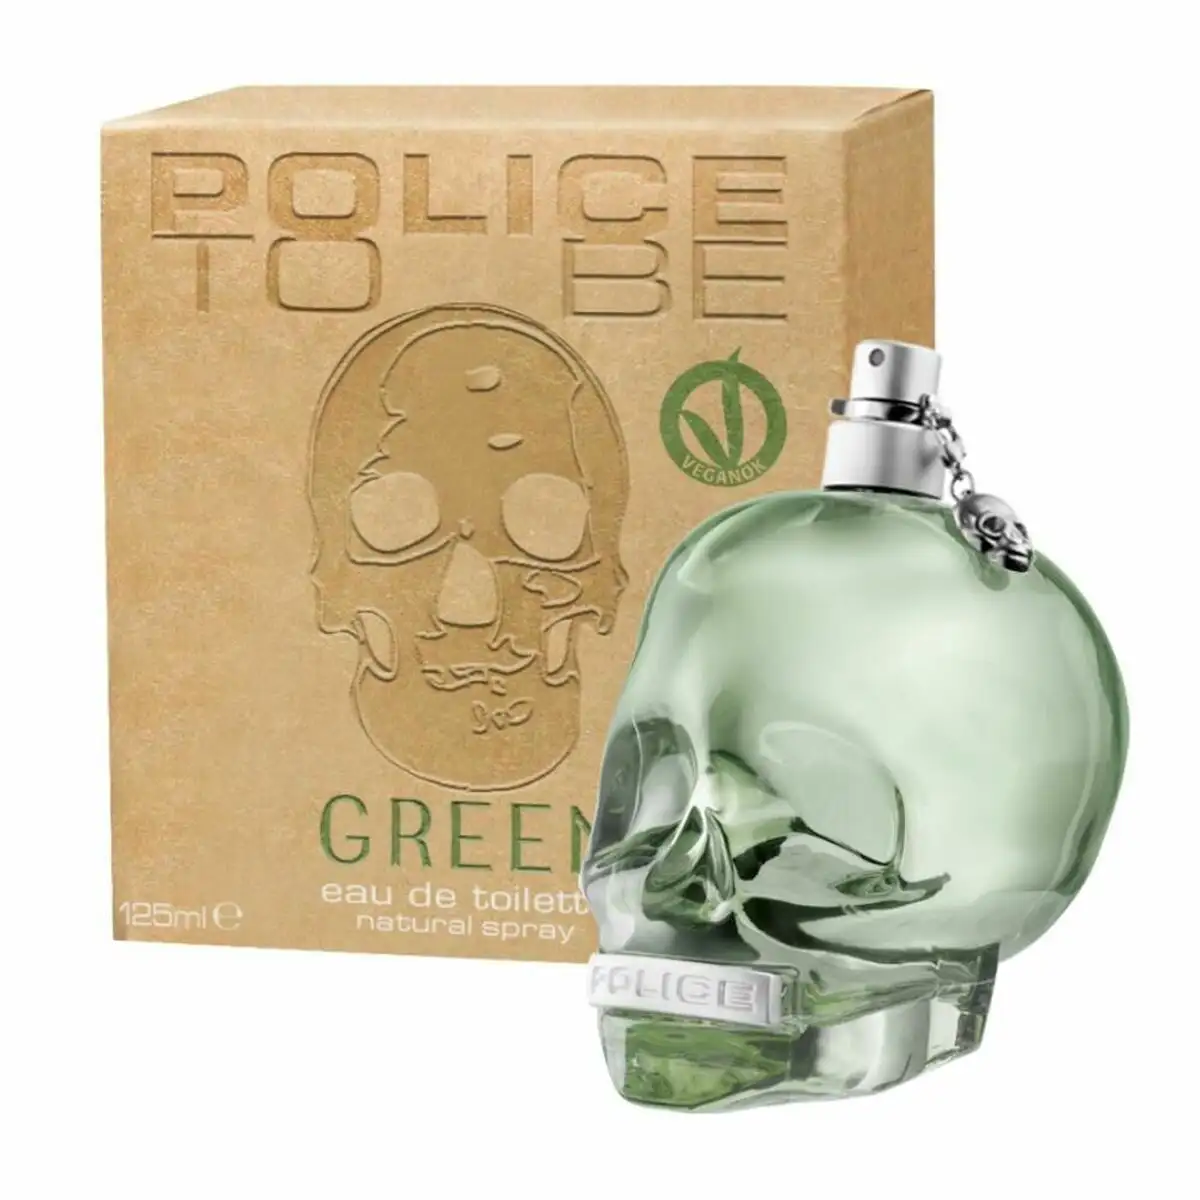 Parfum unisexe police edt to be green 125 ml_7802. DIAYTAR SENEGAL - Votre Portail Vers l'Exclusivité. Explorez notre boutique en ligne pour trouver des produits uniques et exclusifs, conçus pour les amateurs de qualité.